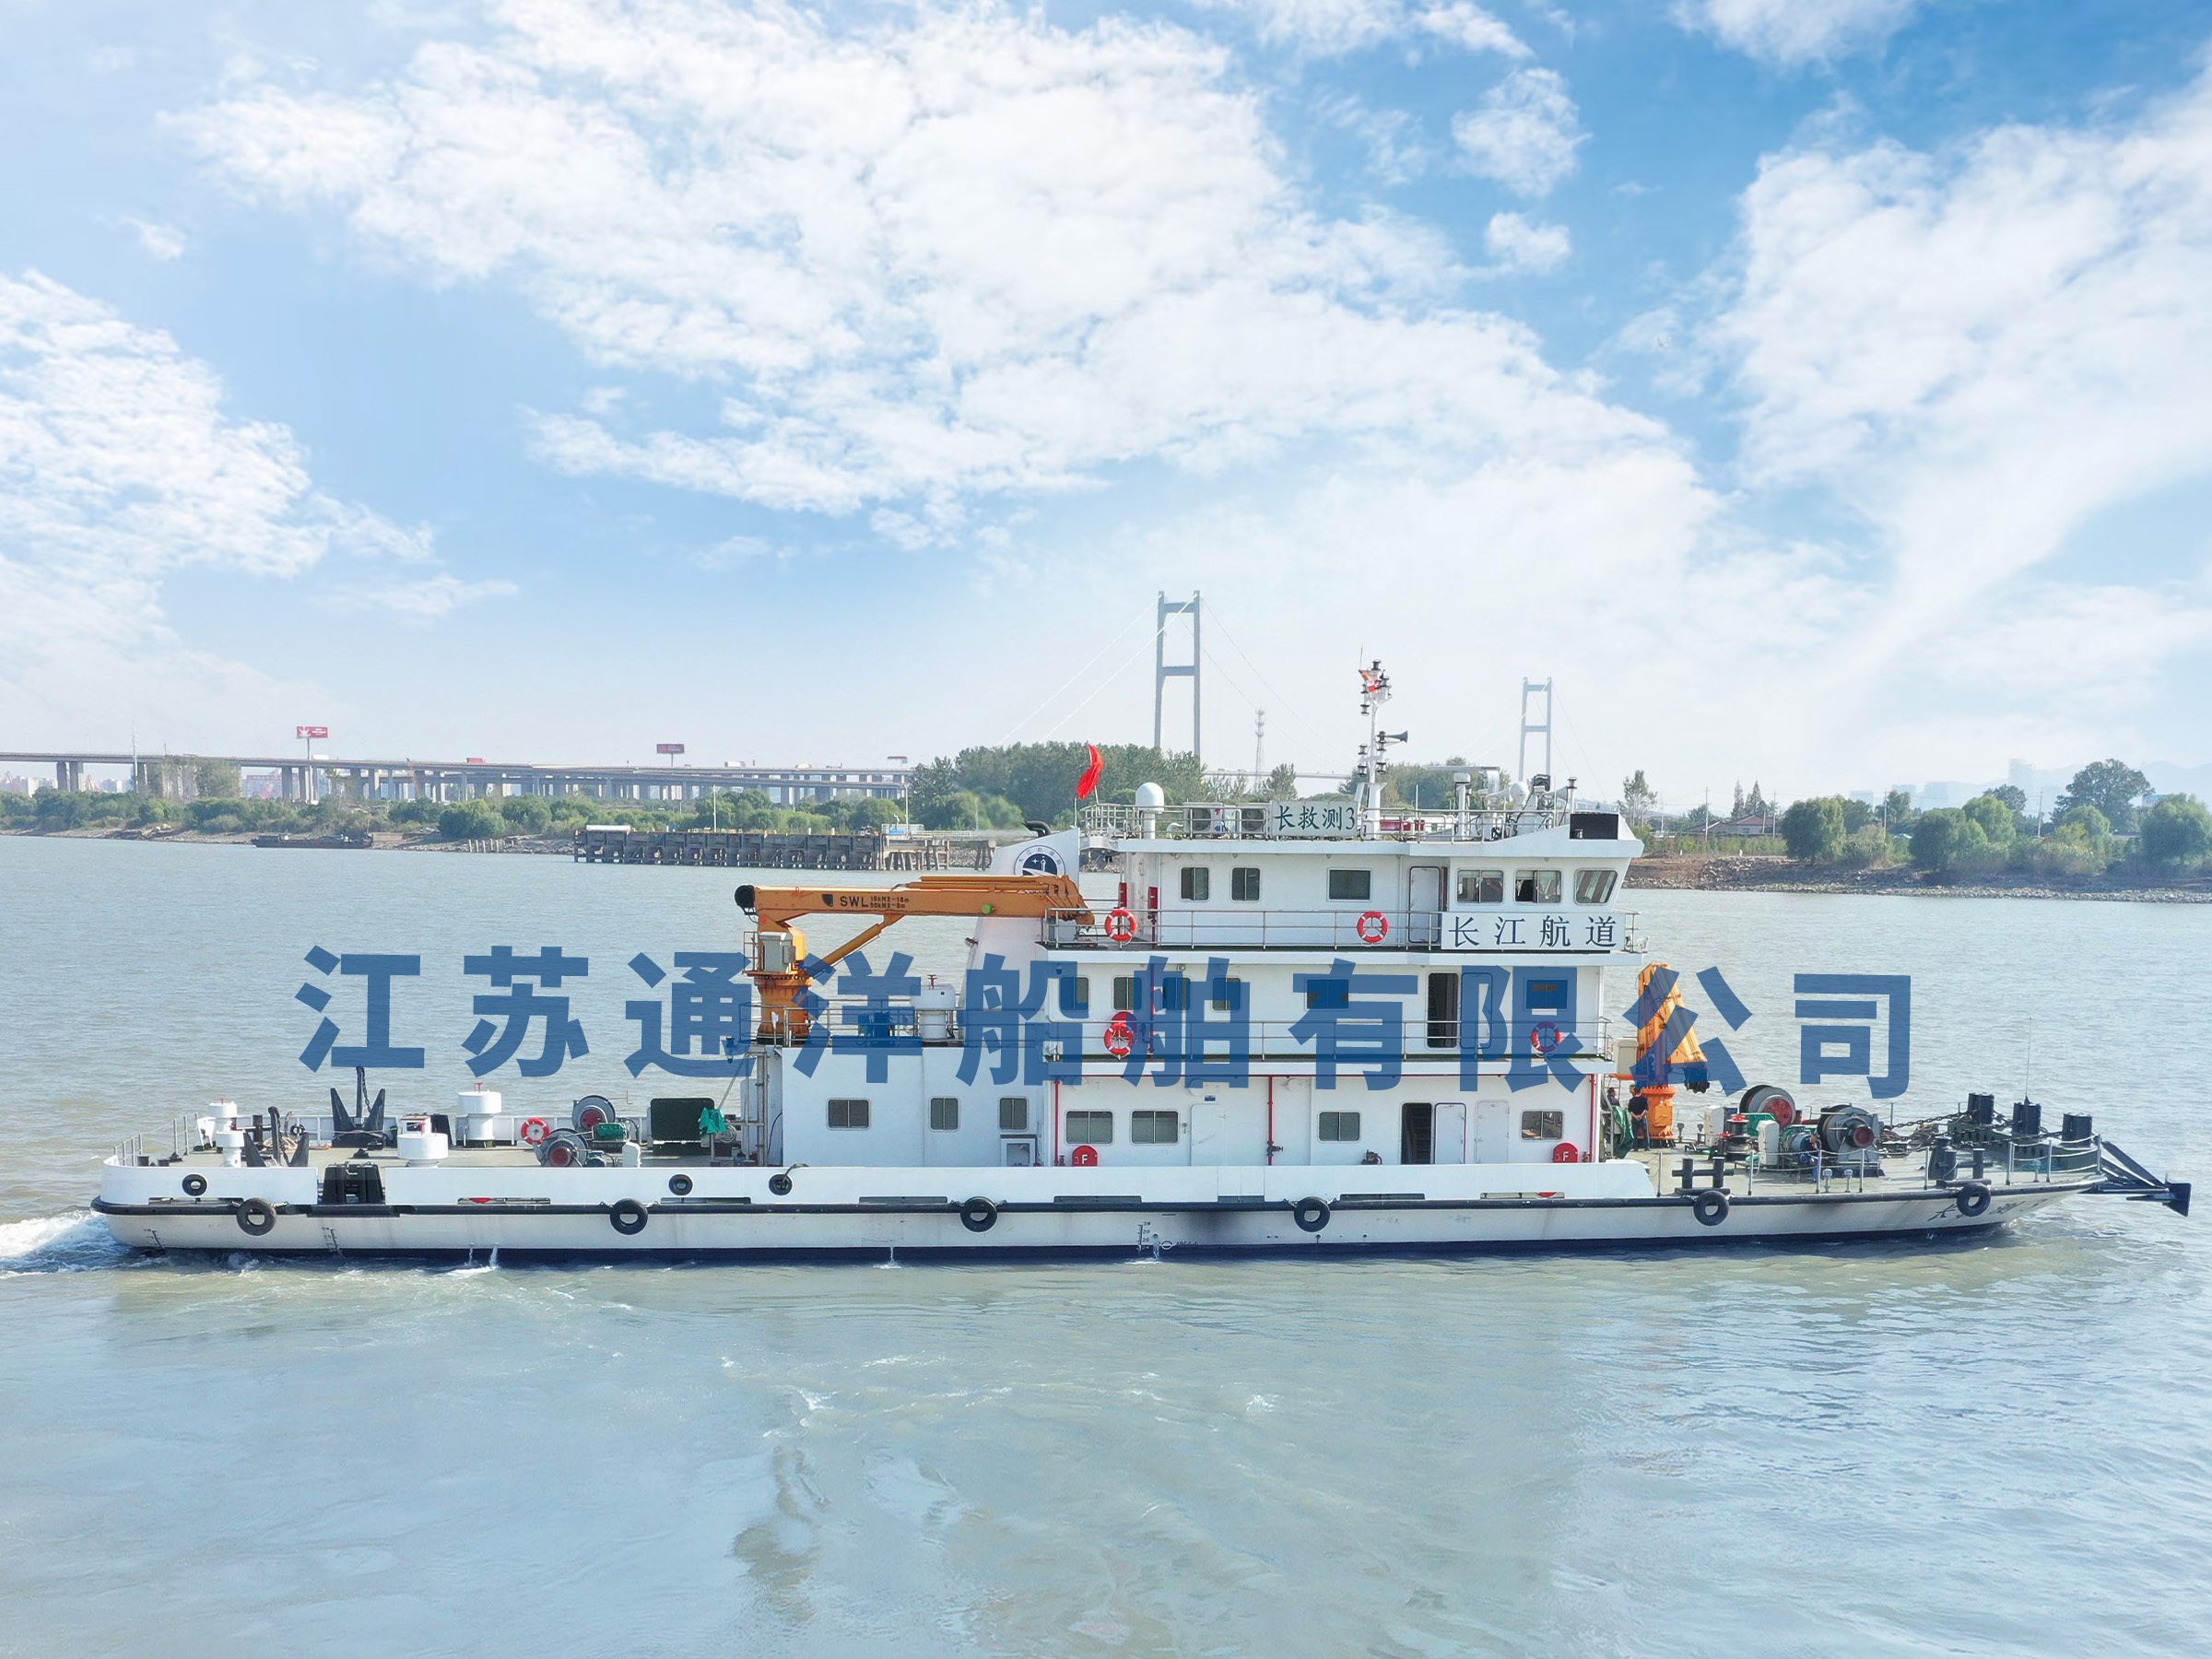 江苏通洋船舶有限公司承建的水下探测船“长救测3”顺利完成交接